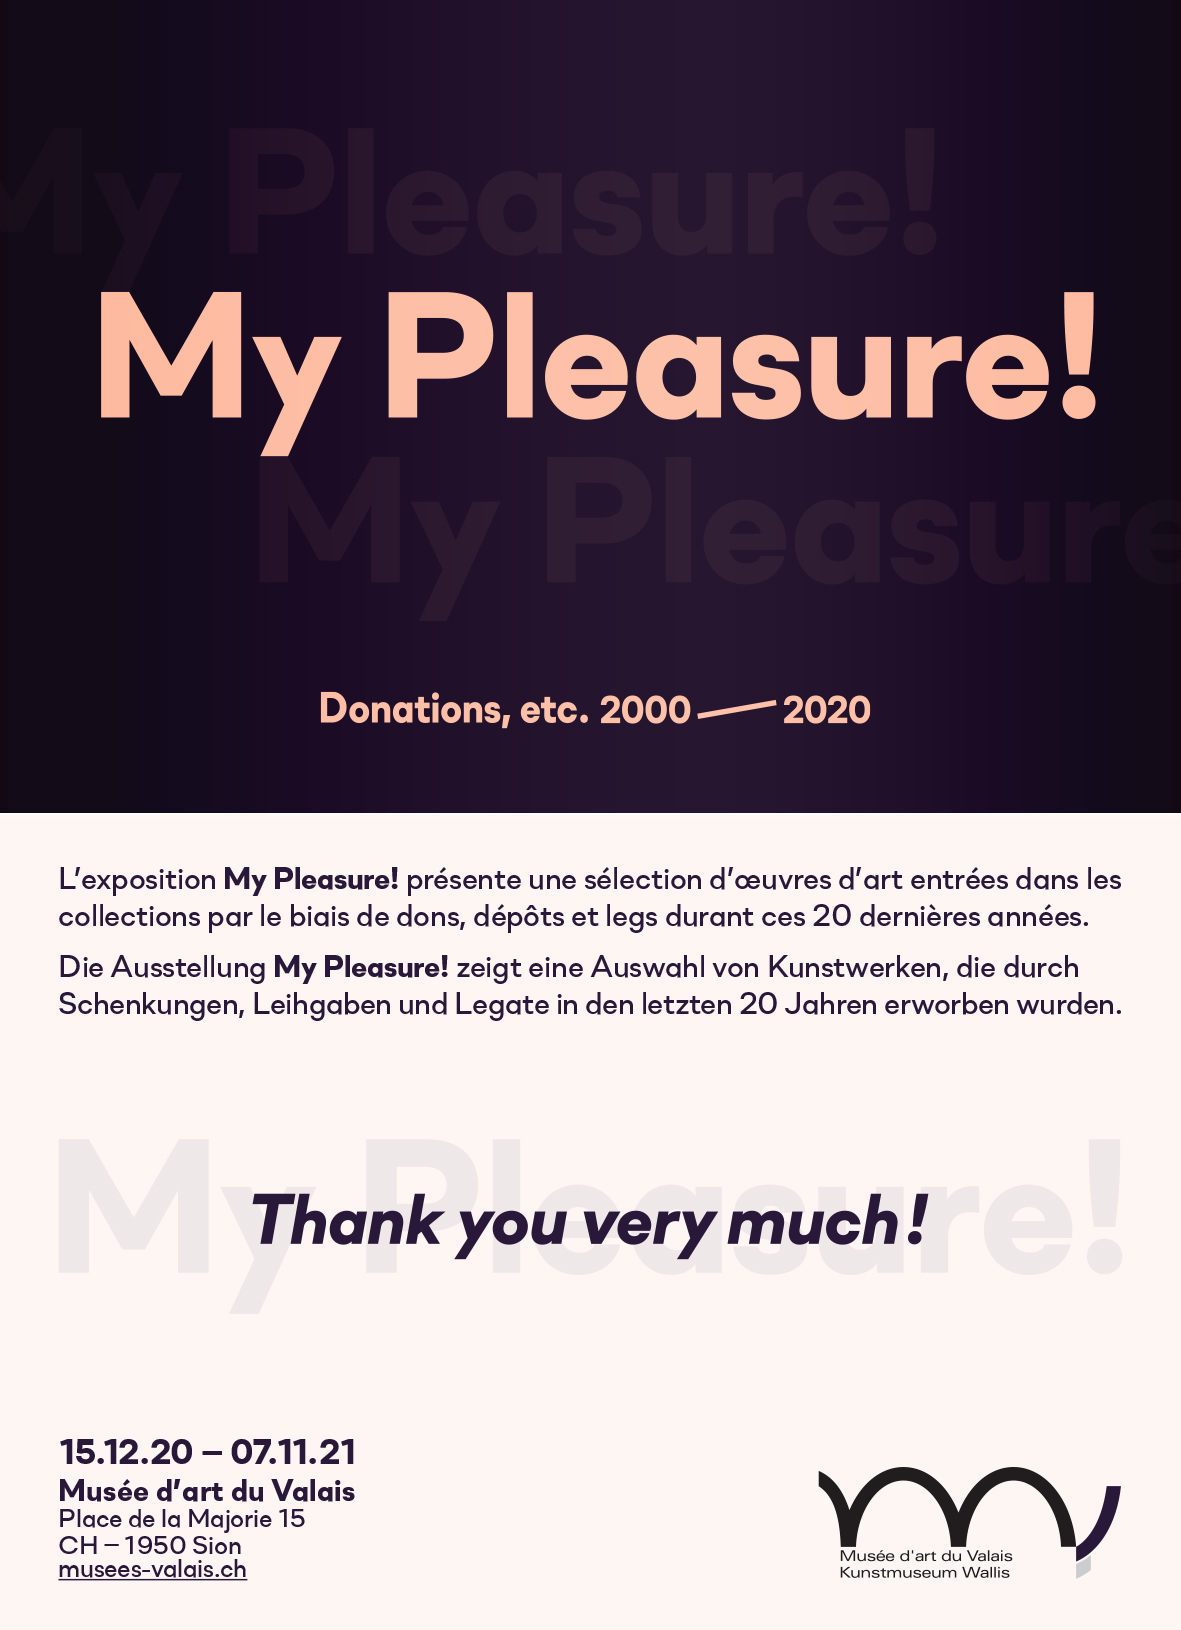 My pleasure ! Donations, etc. 2000-2020